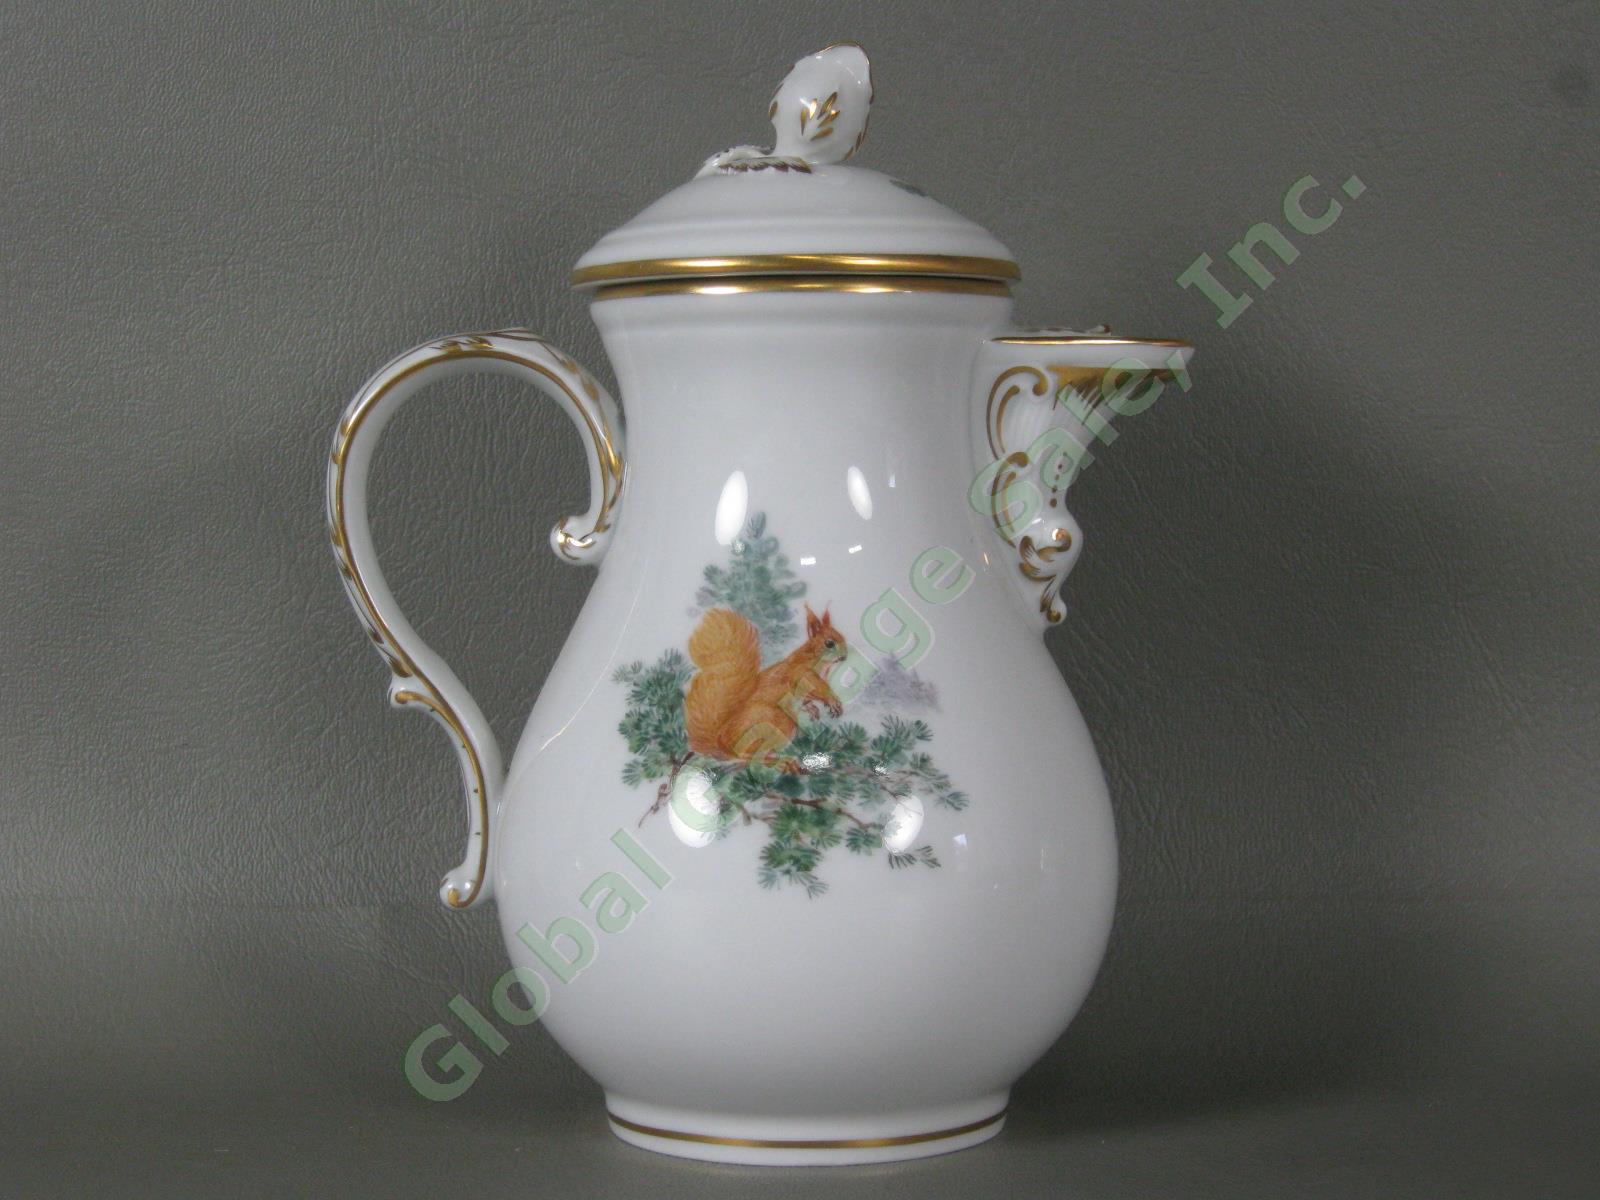 RARE Antique Meissen German Porcelain Wildlife Coffee Service Tea Set Pot Cups + 3